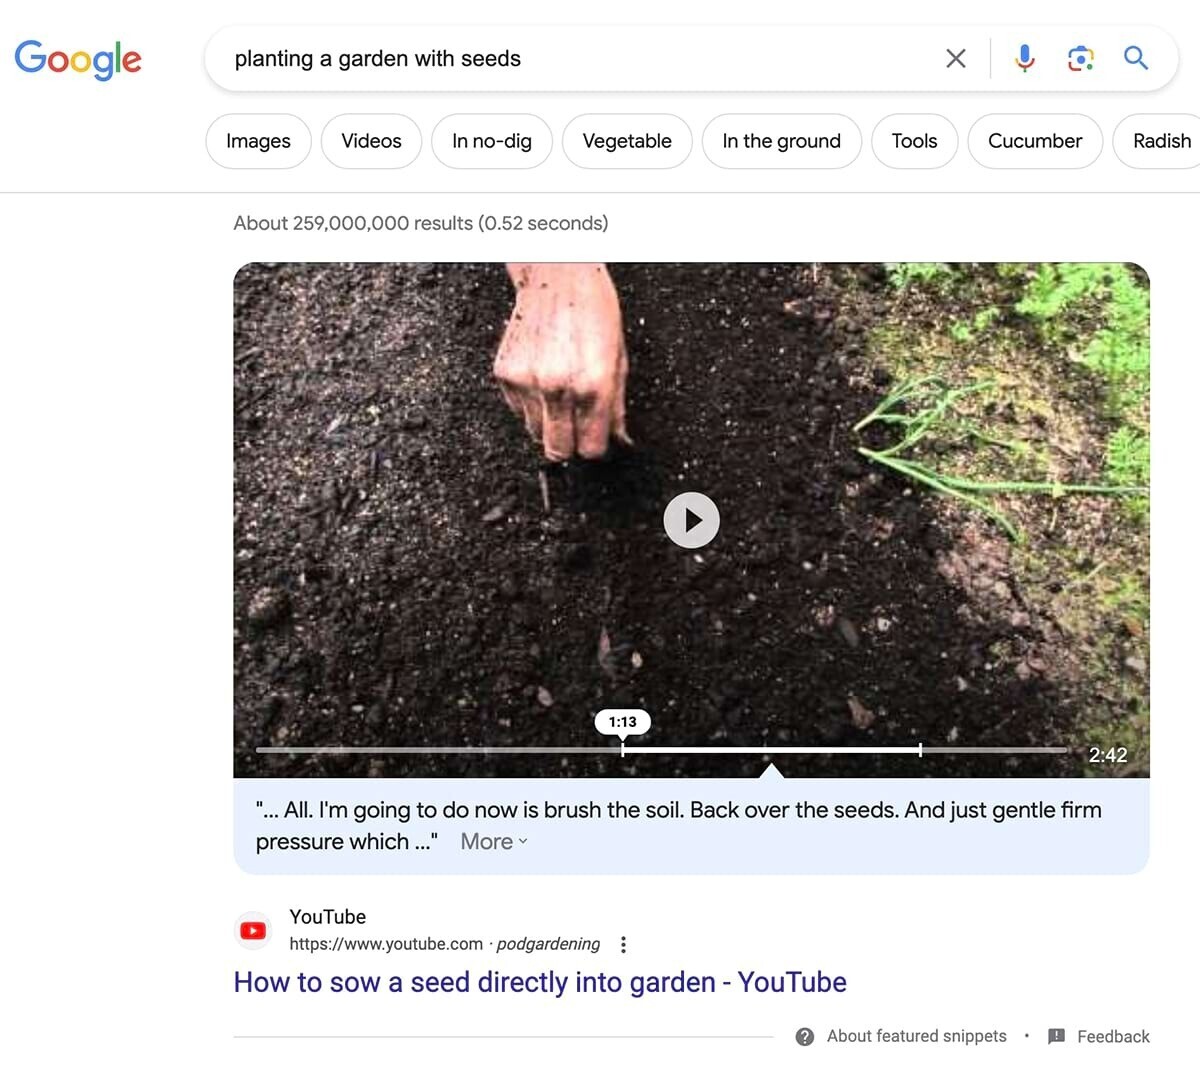 Résultat vidéo Google SERP pour "planter un jardin avec des graines"